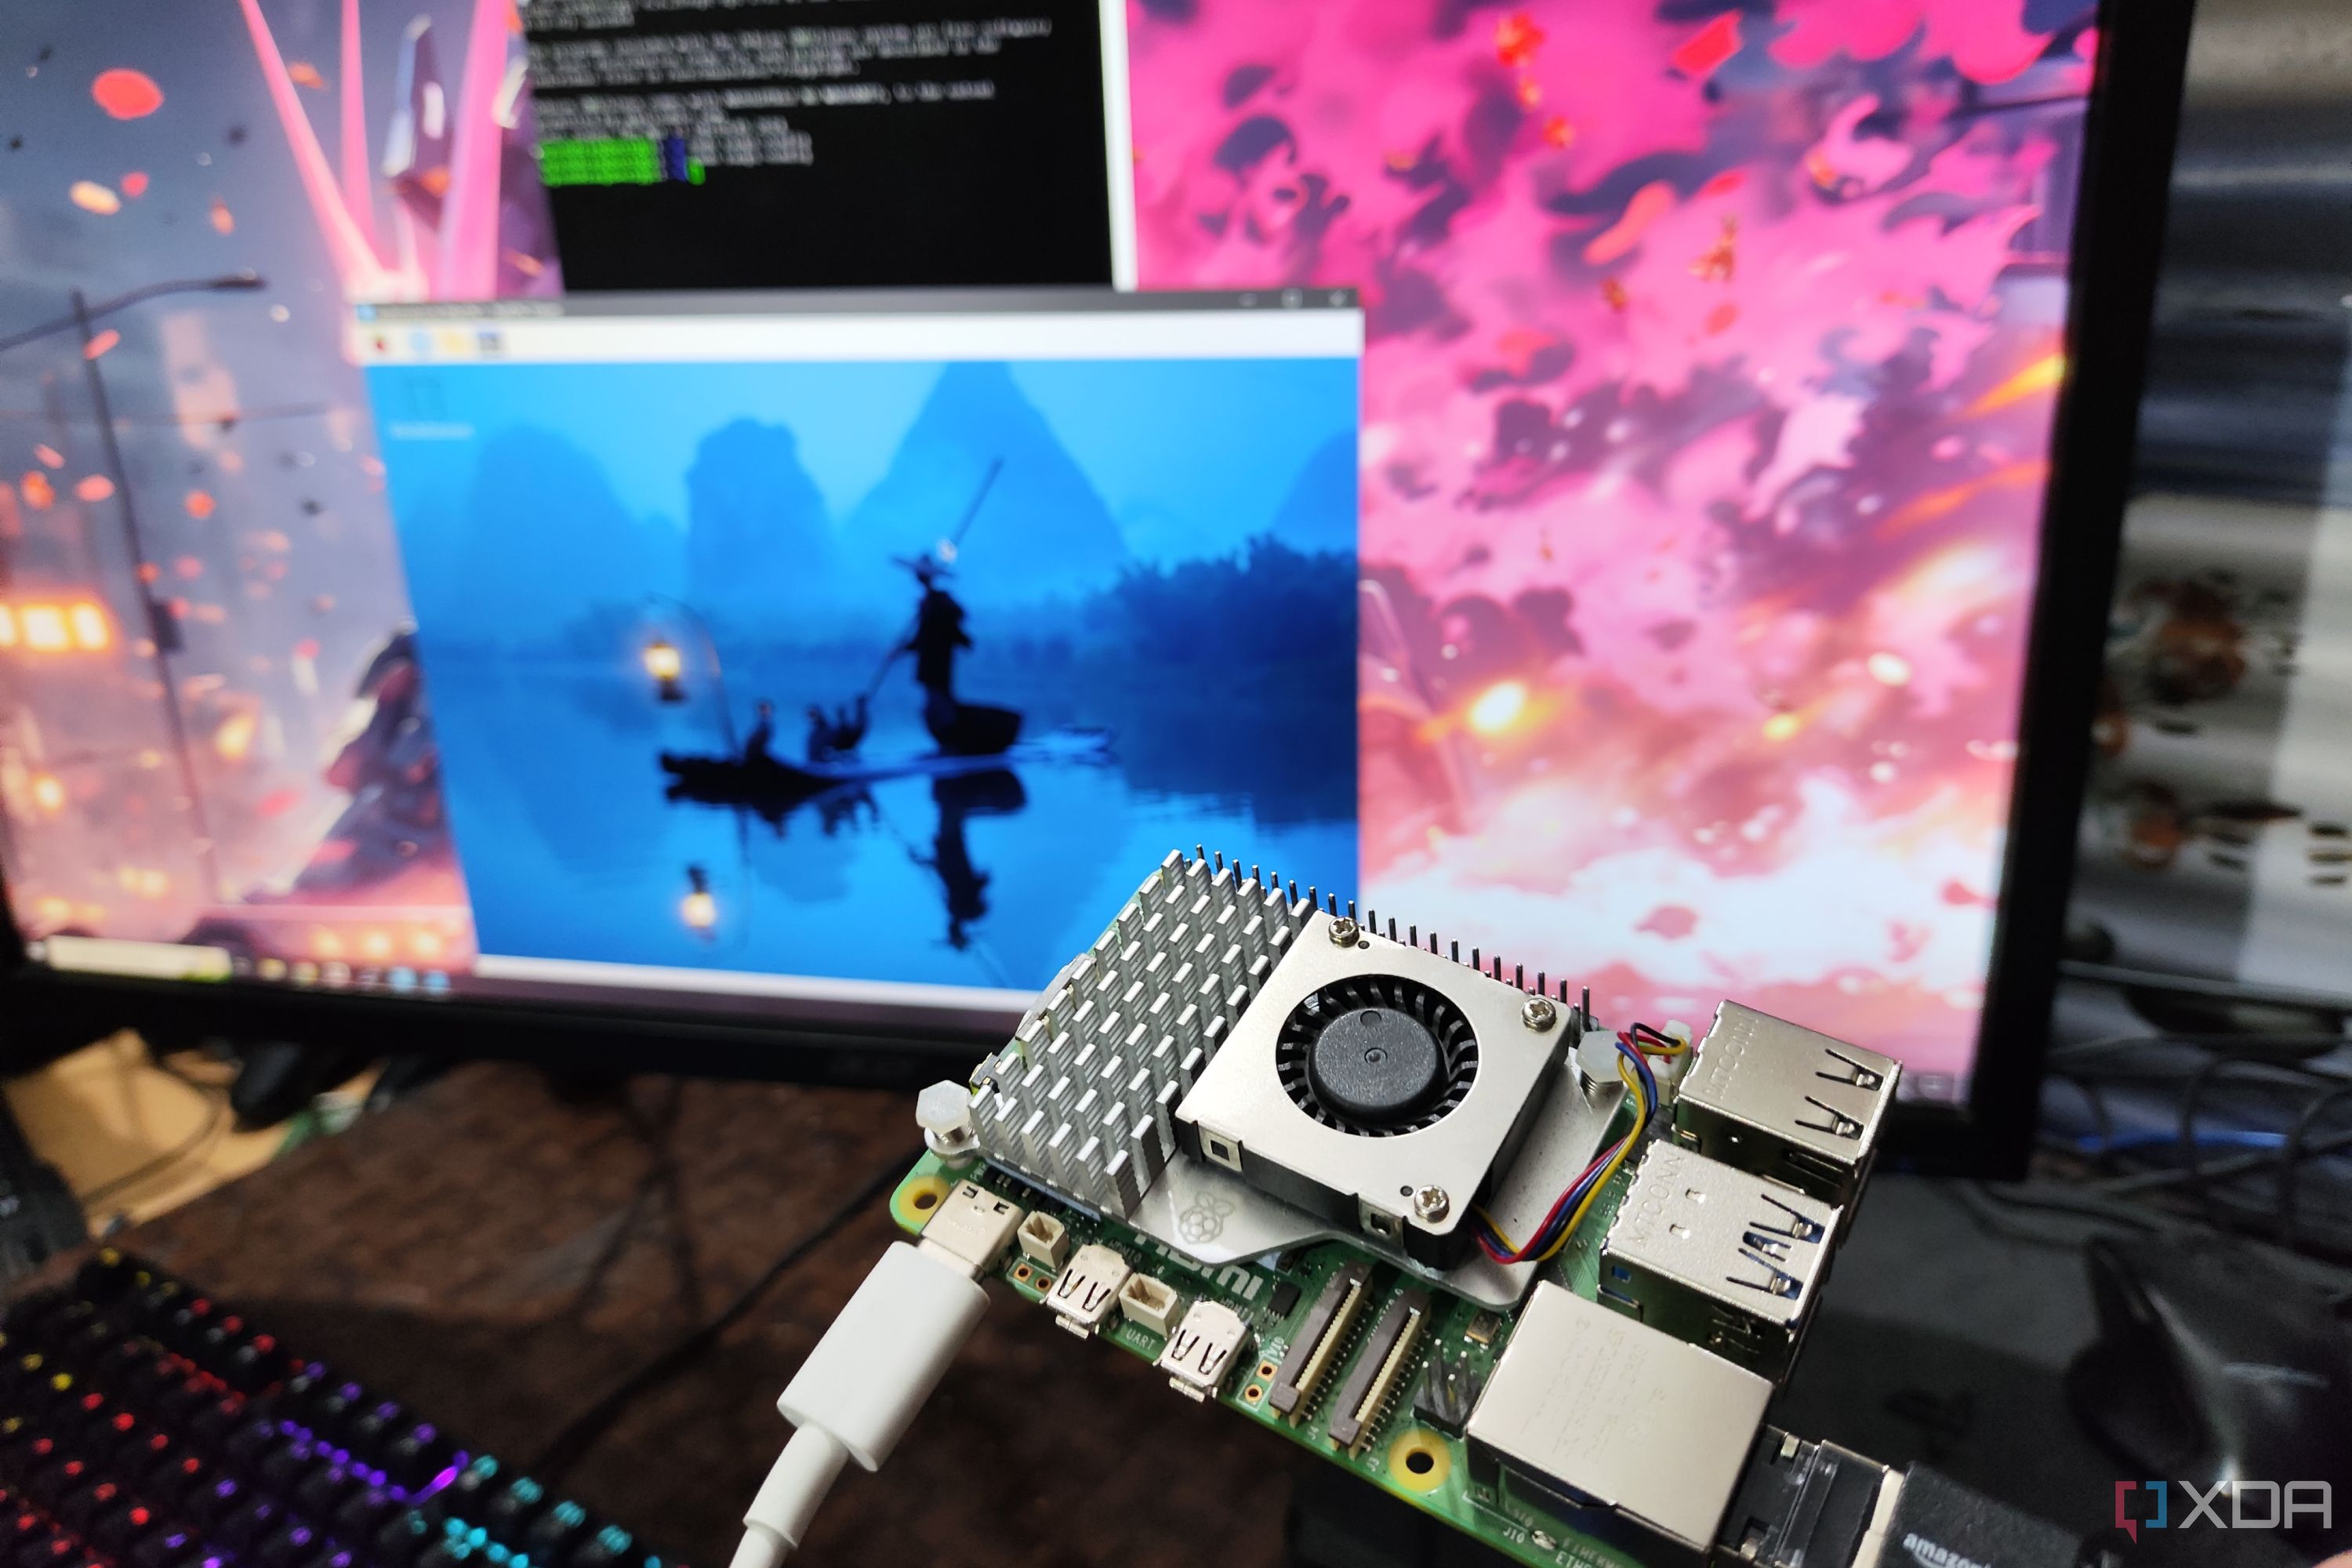 Безголовый Raspberry Pi с PuTTY и RealVNC Viewer, работающими на мониторе в фоновом режиме.